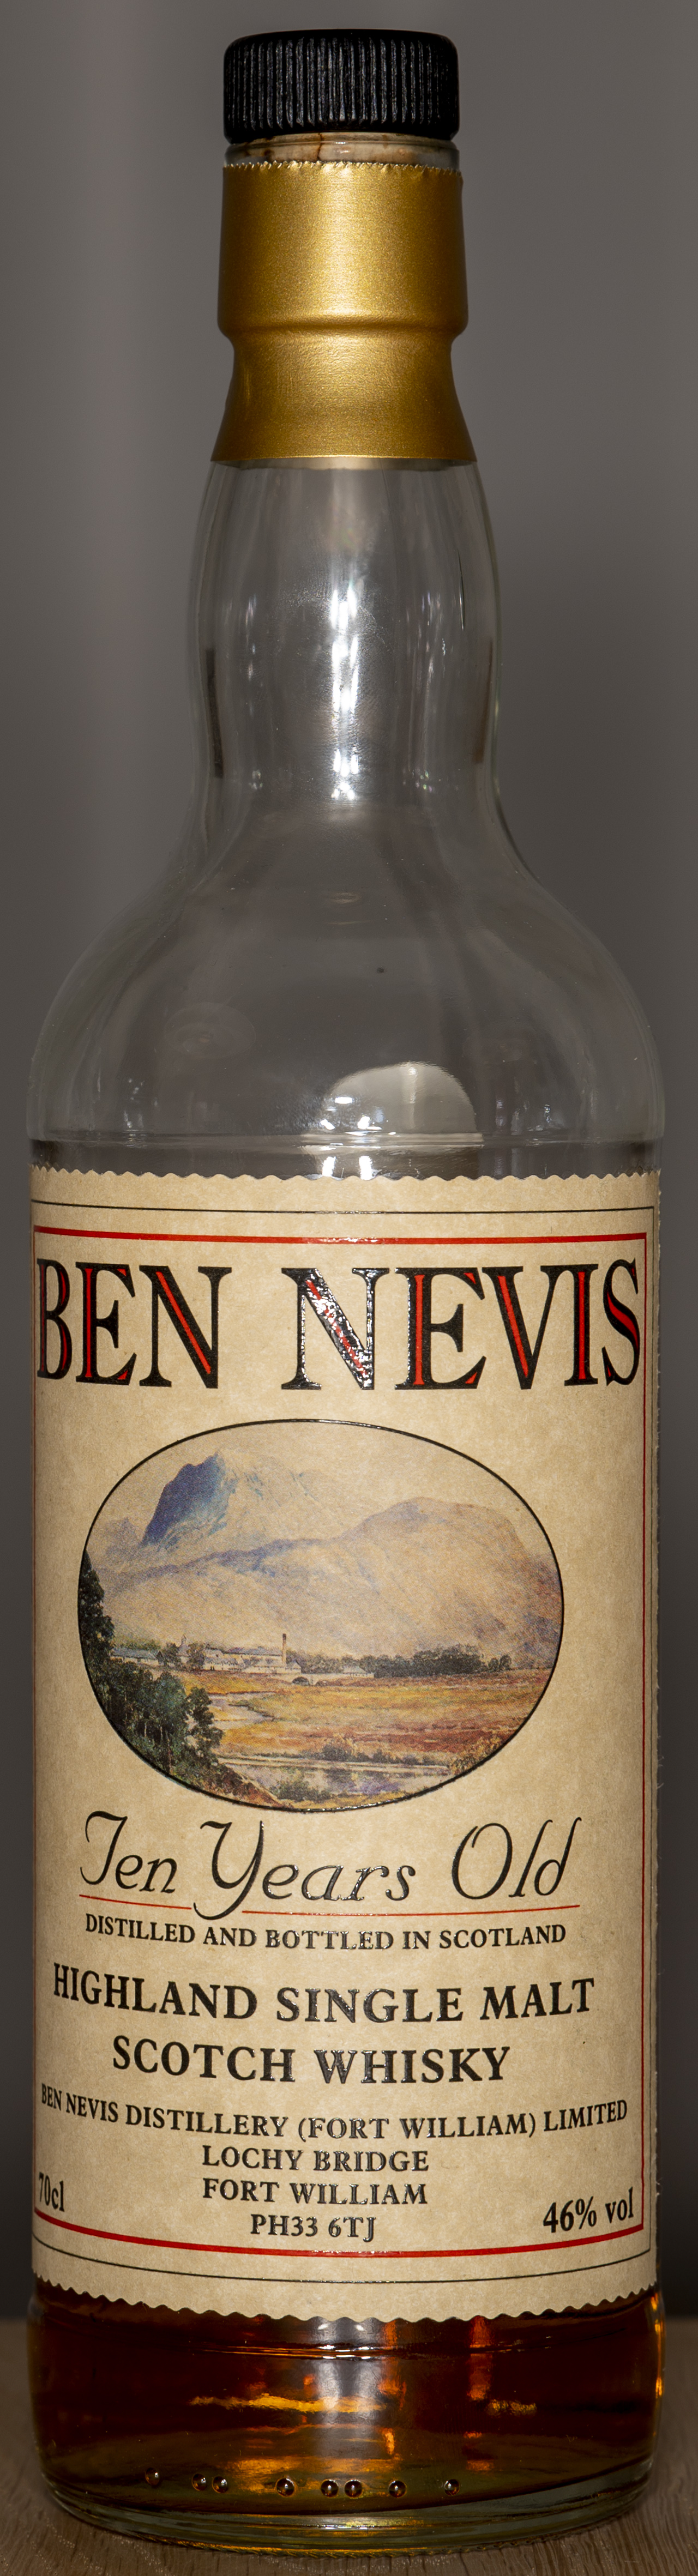 Billede: DSC_4762 - Ben Nevis 10 - bottle front.jpg